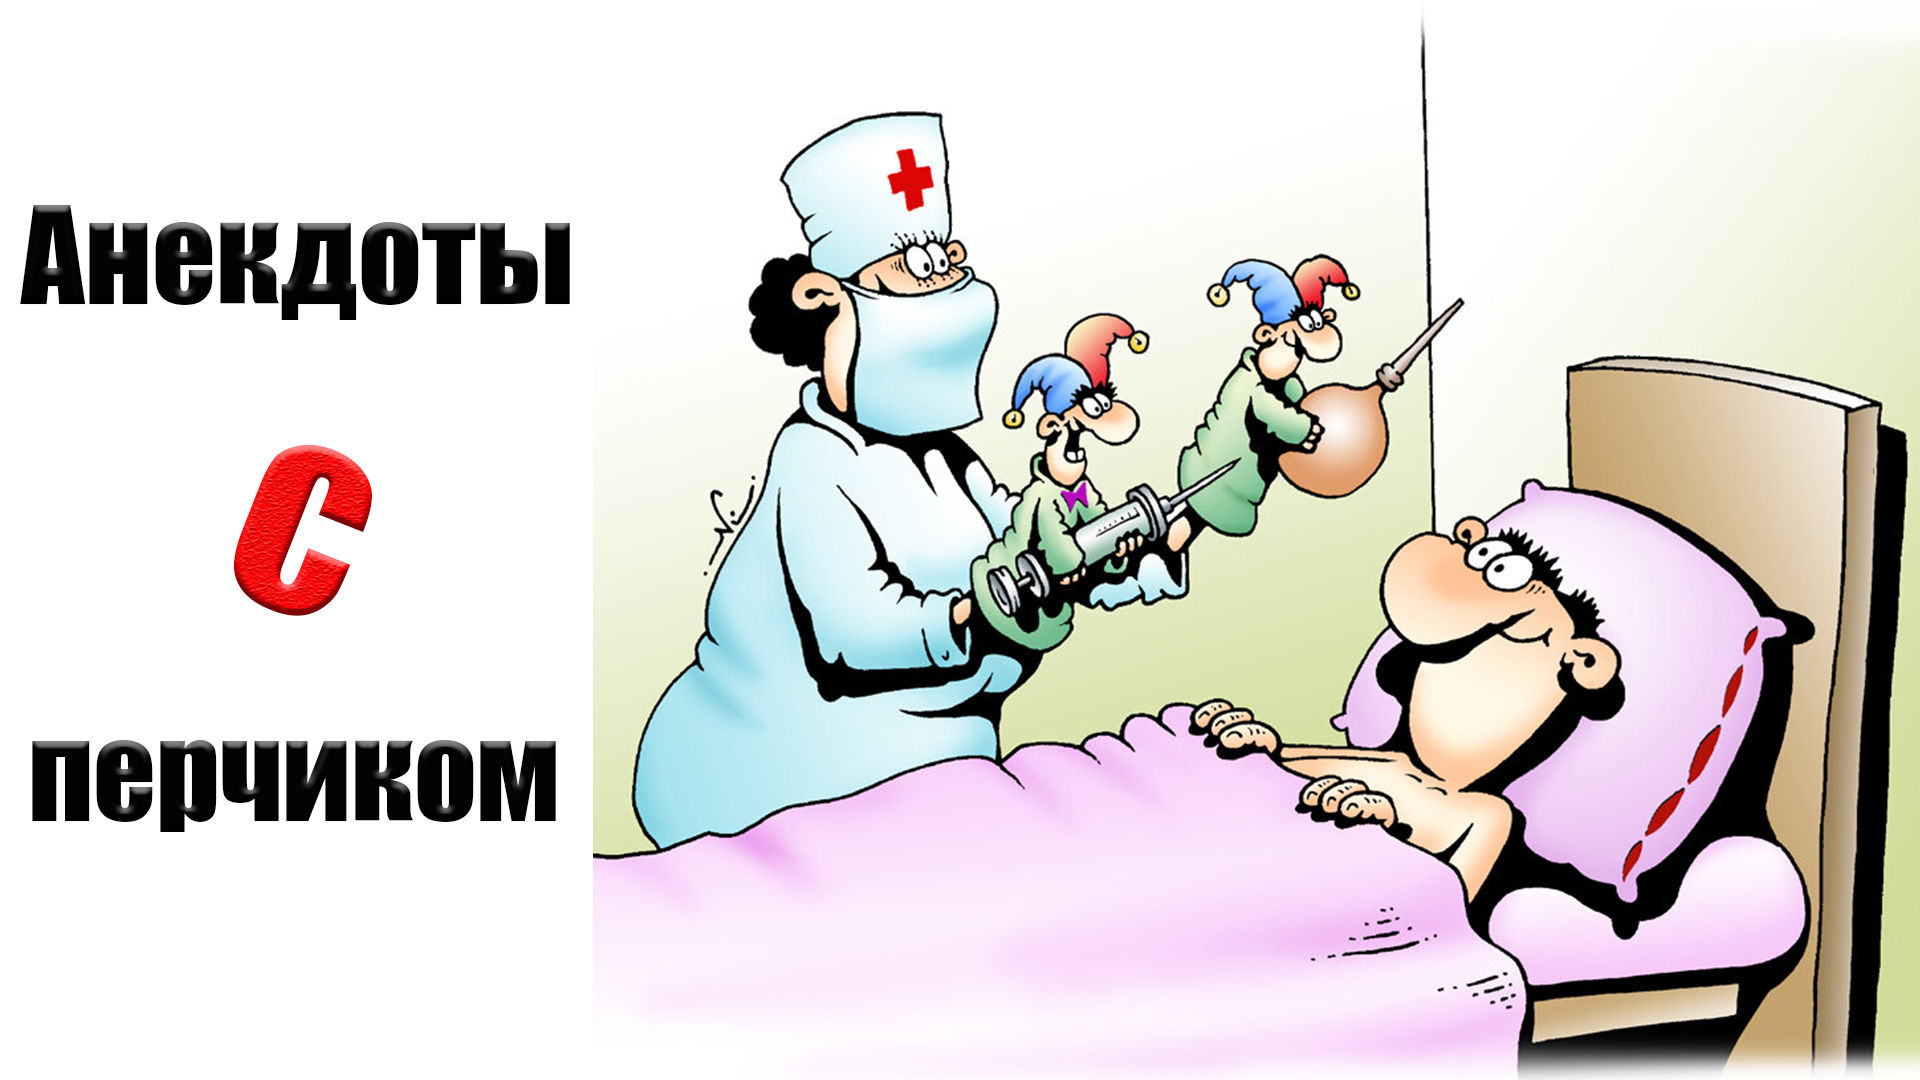 Что говорят перед операцией. Медики карикатуры. Смешные карикатуры про медицину. Медицина карикатура. Карикатуры на врачей и медсестер.